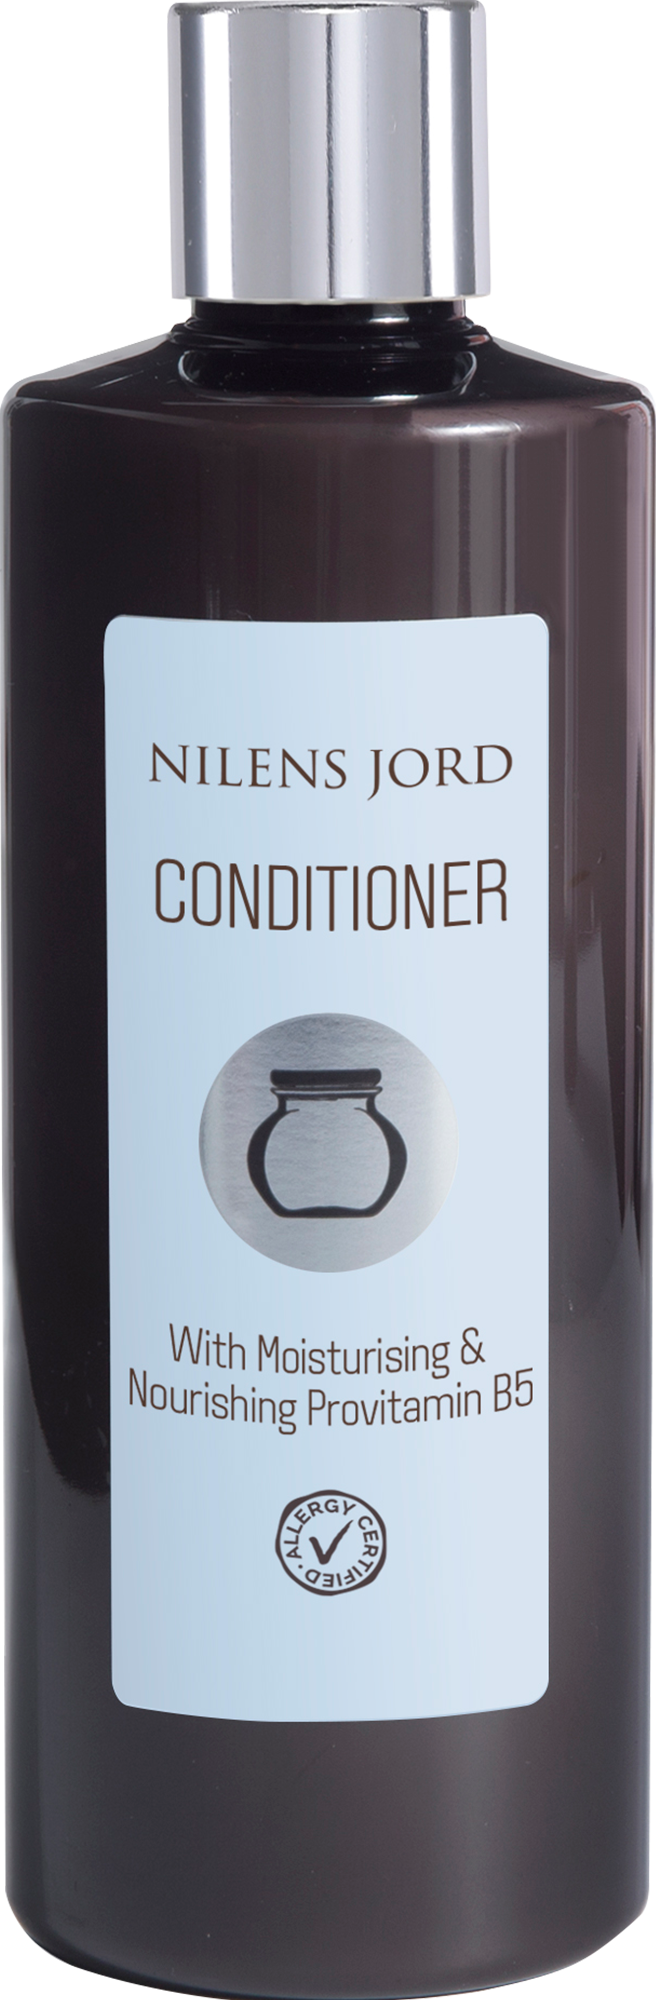 Billede af Nilens Jord Conditioner 300 ml.